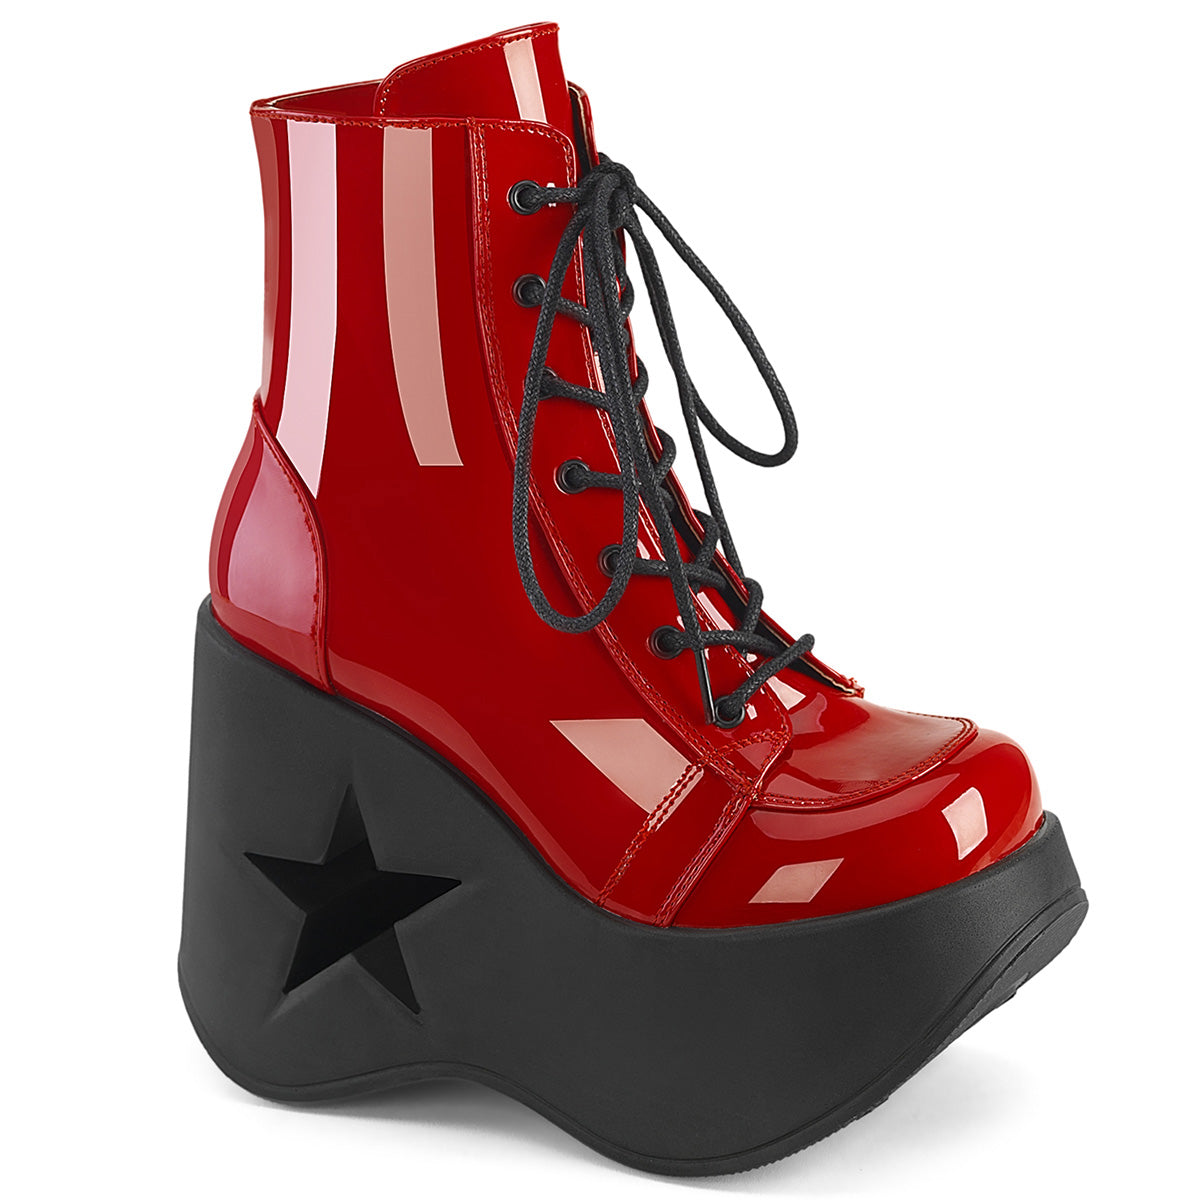 DYNAMITE-106 Alternative Footwear Demonia Women's Ankle Boots Red Pat